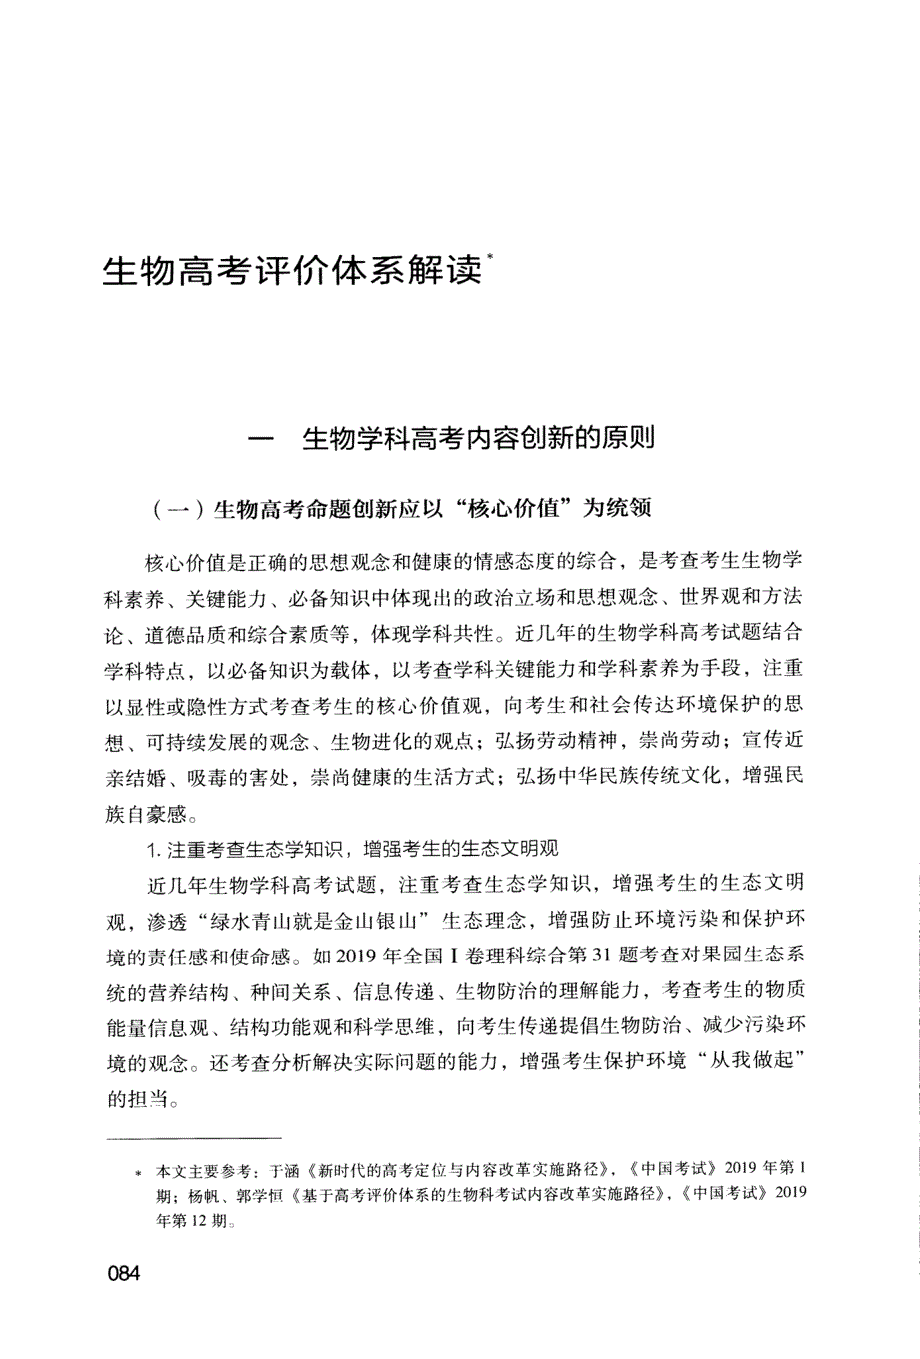 《中国高考评价体系》下生物学科评价体系解读_第1页